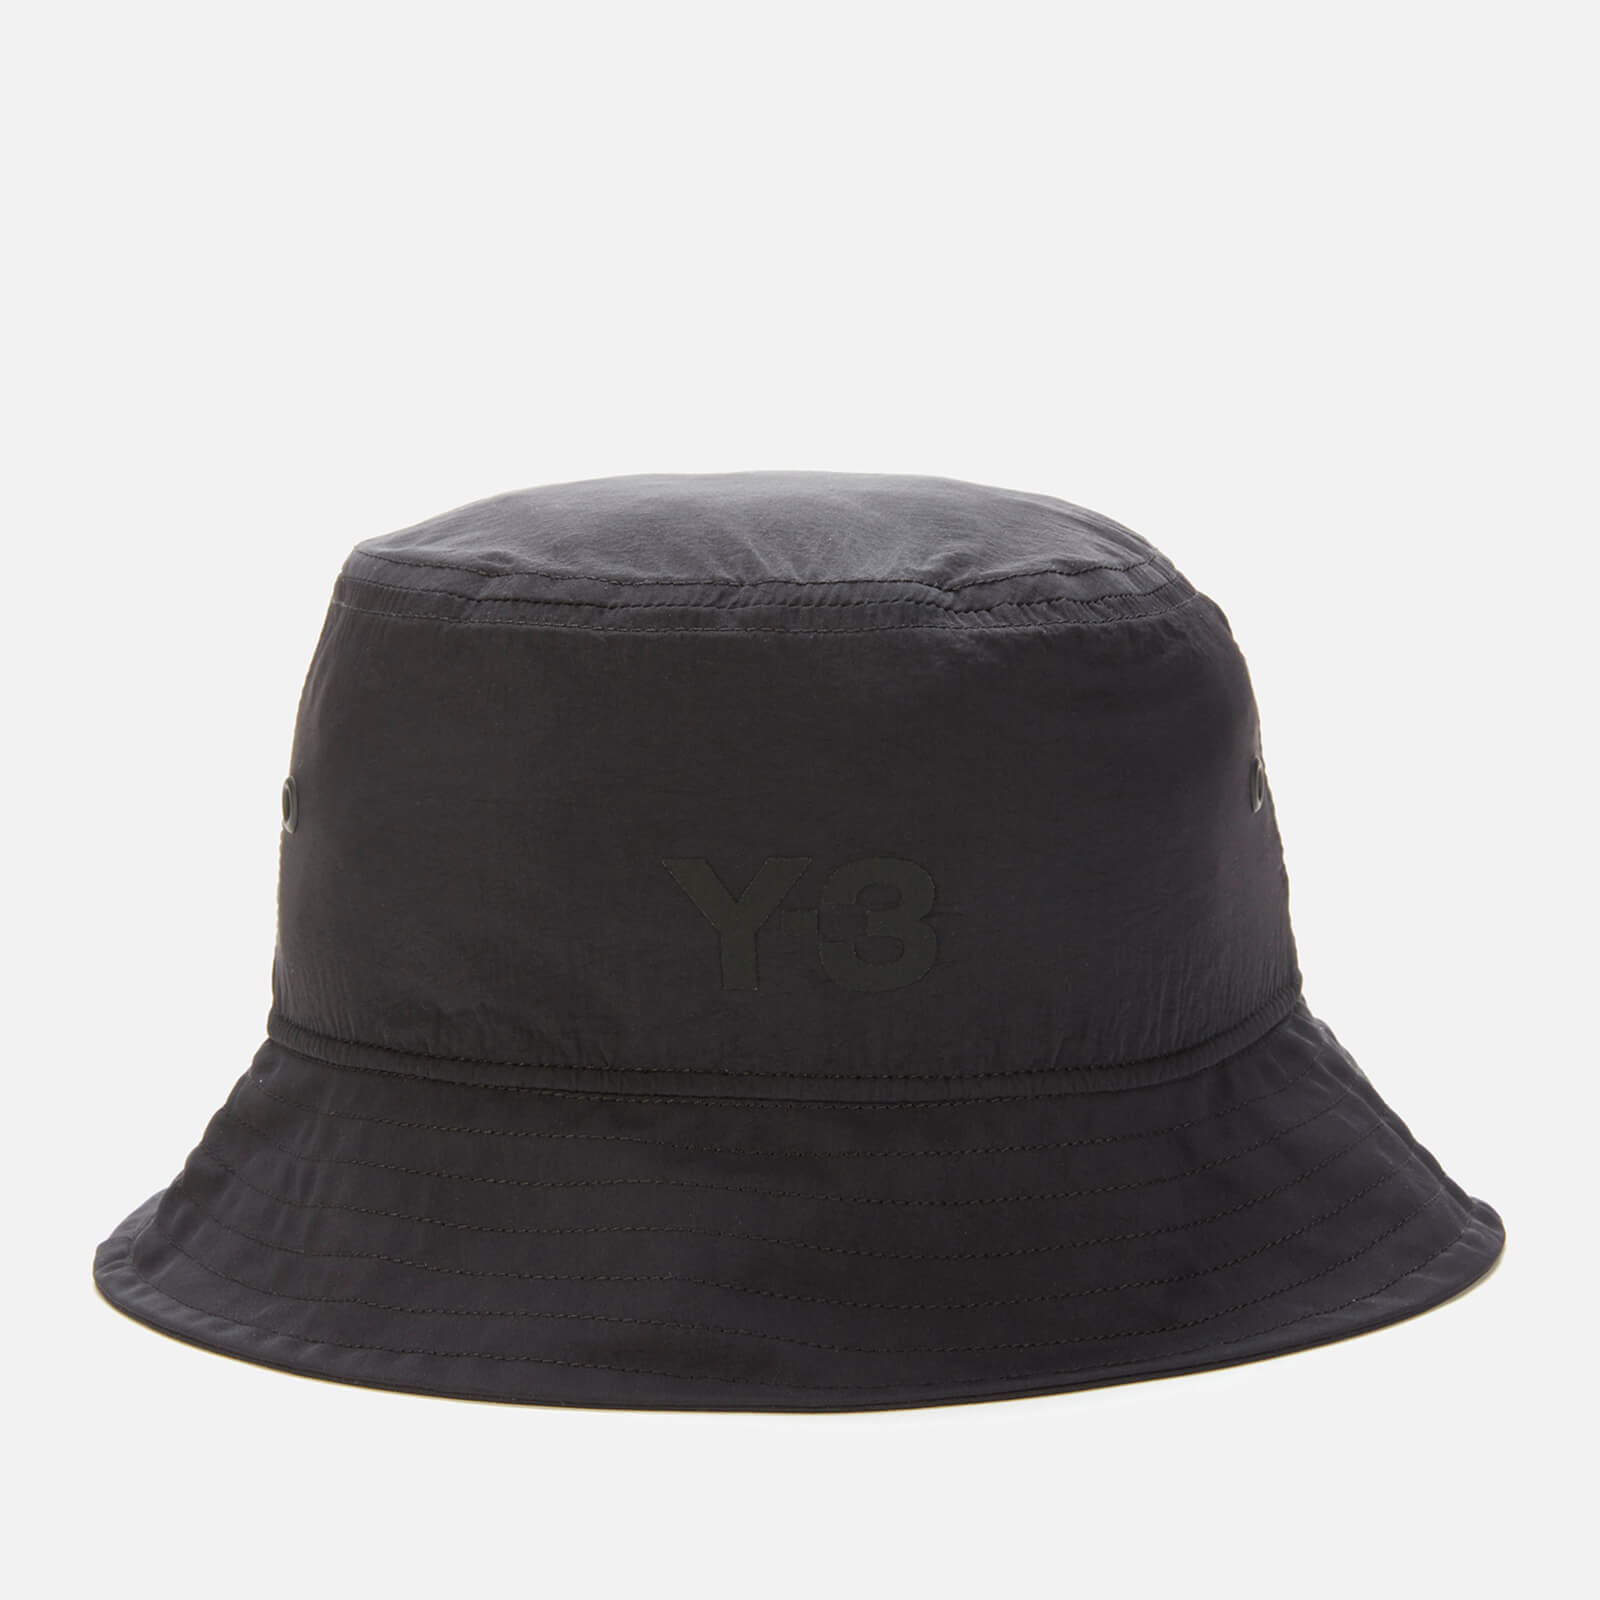 Y-3 Men's Bucket Hat - Black - S